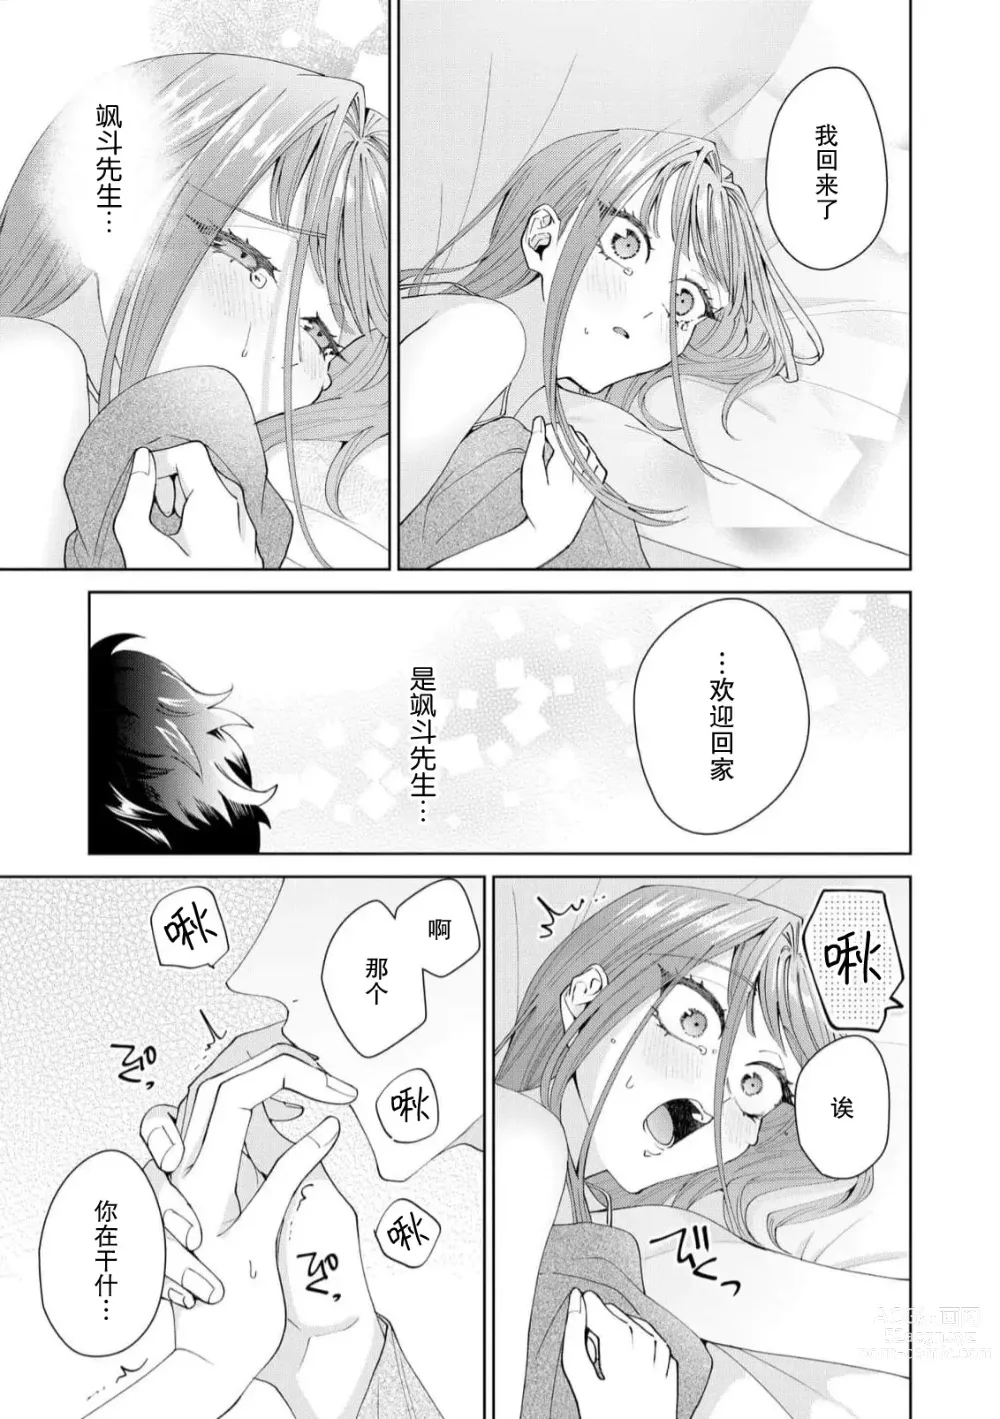 Page 479 of manga 能干程序员隐藏的一面 把我“开发”的溺爱步骤 1-16